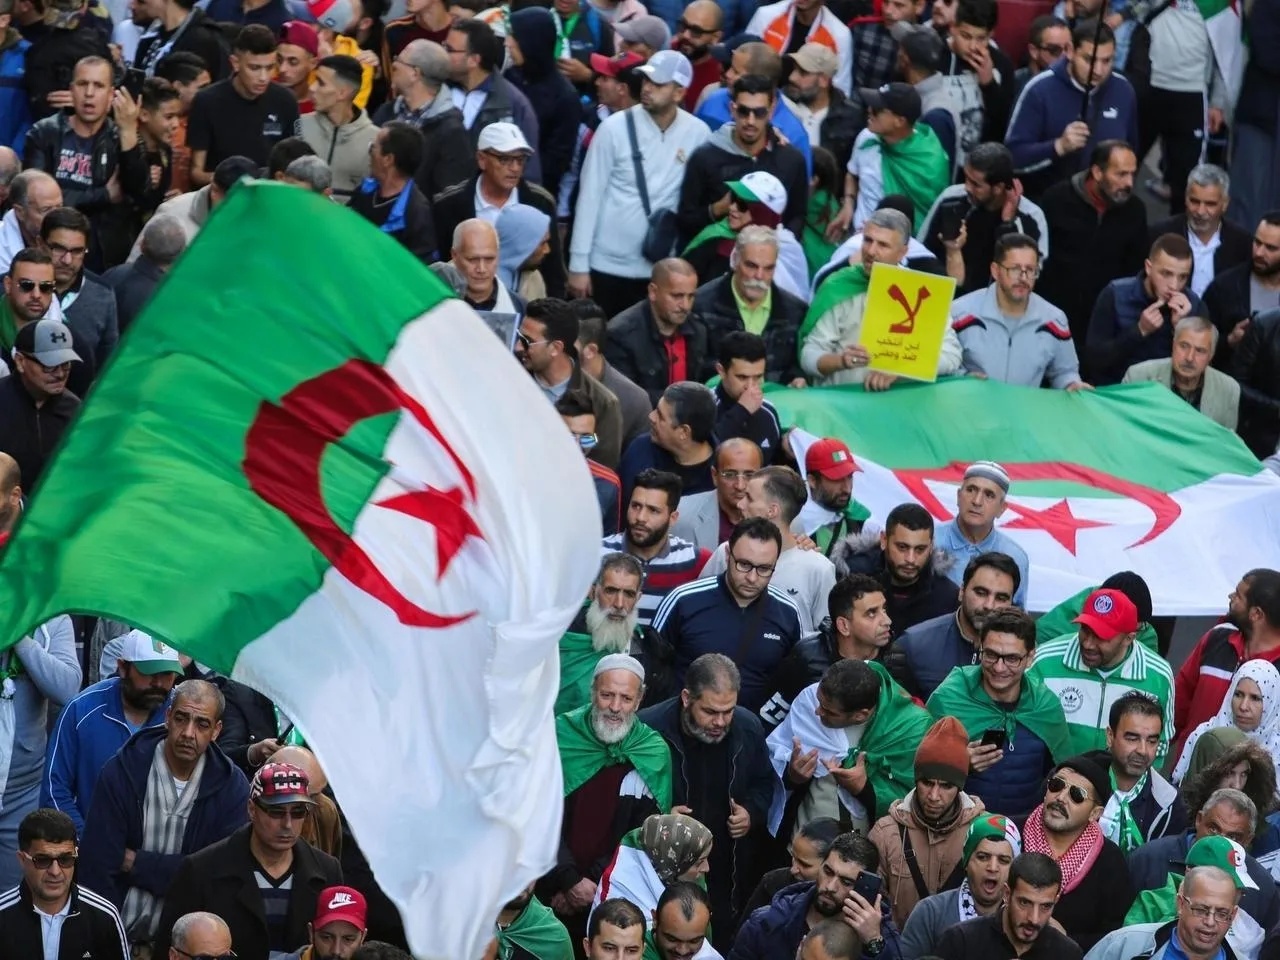 2019-11-29t162617z_1252863521_rc24ld9i0mnu_rtrmadp_3_algeria-protests_0